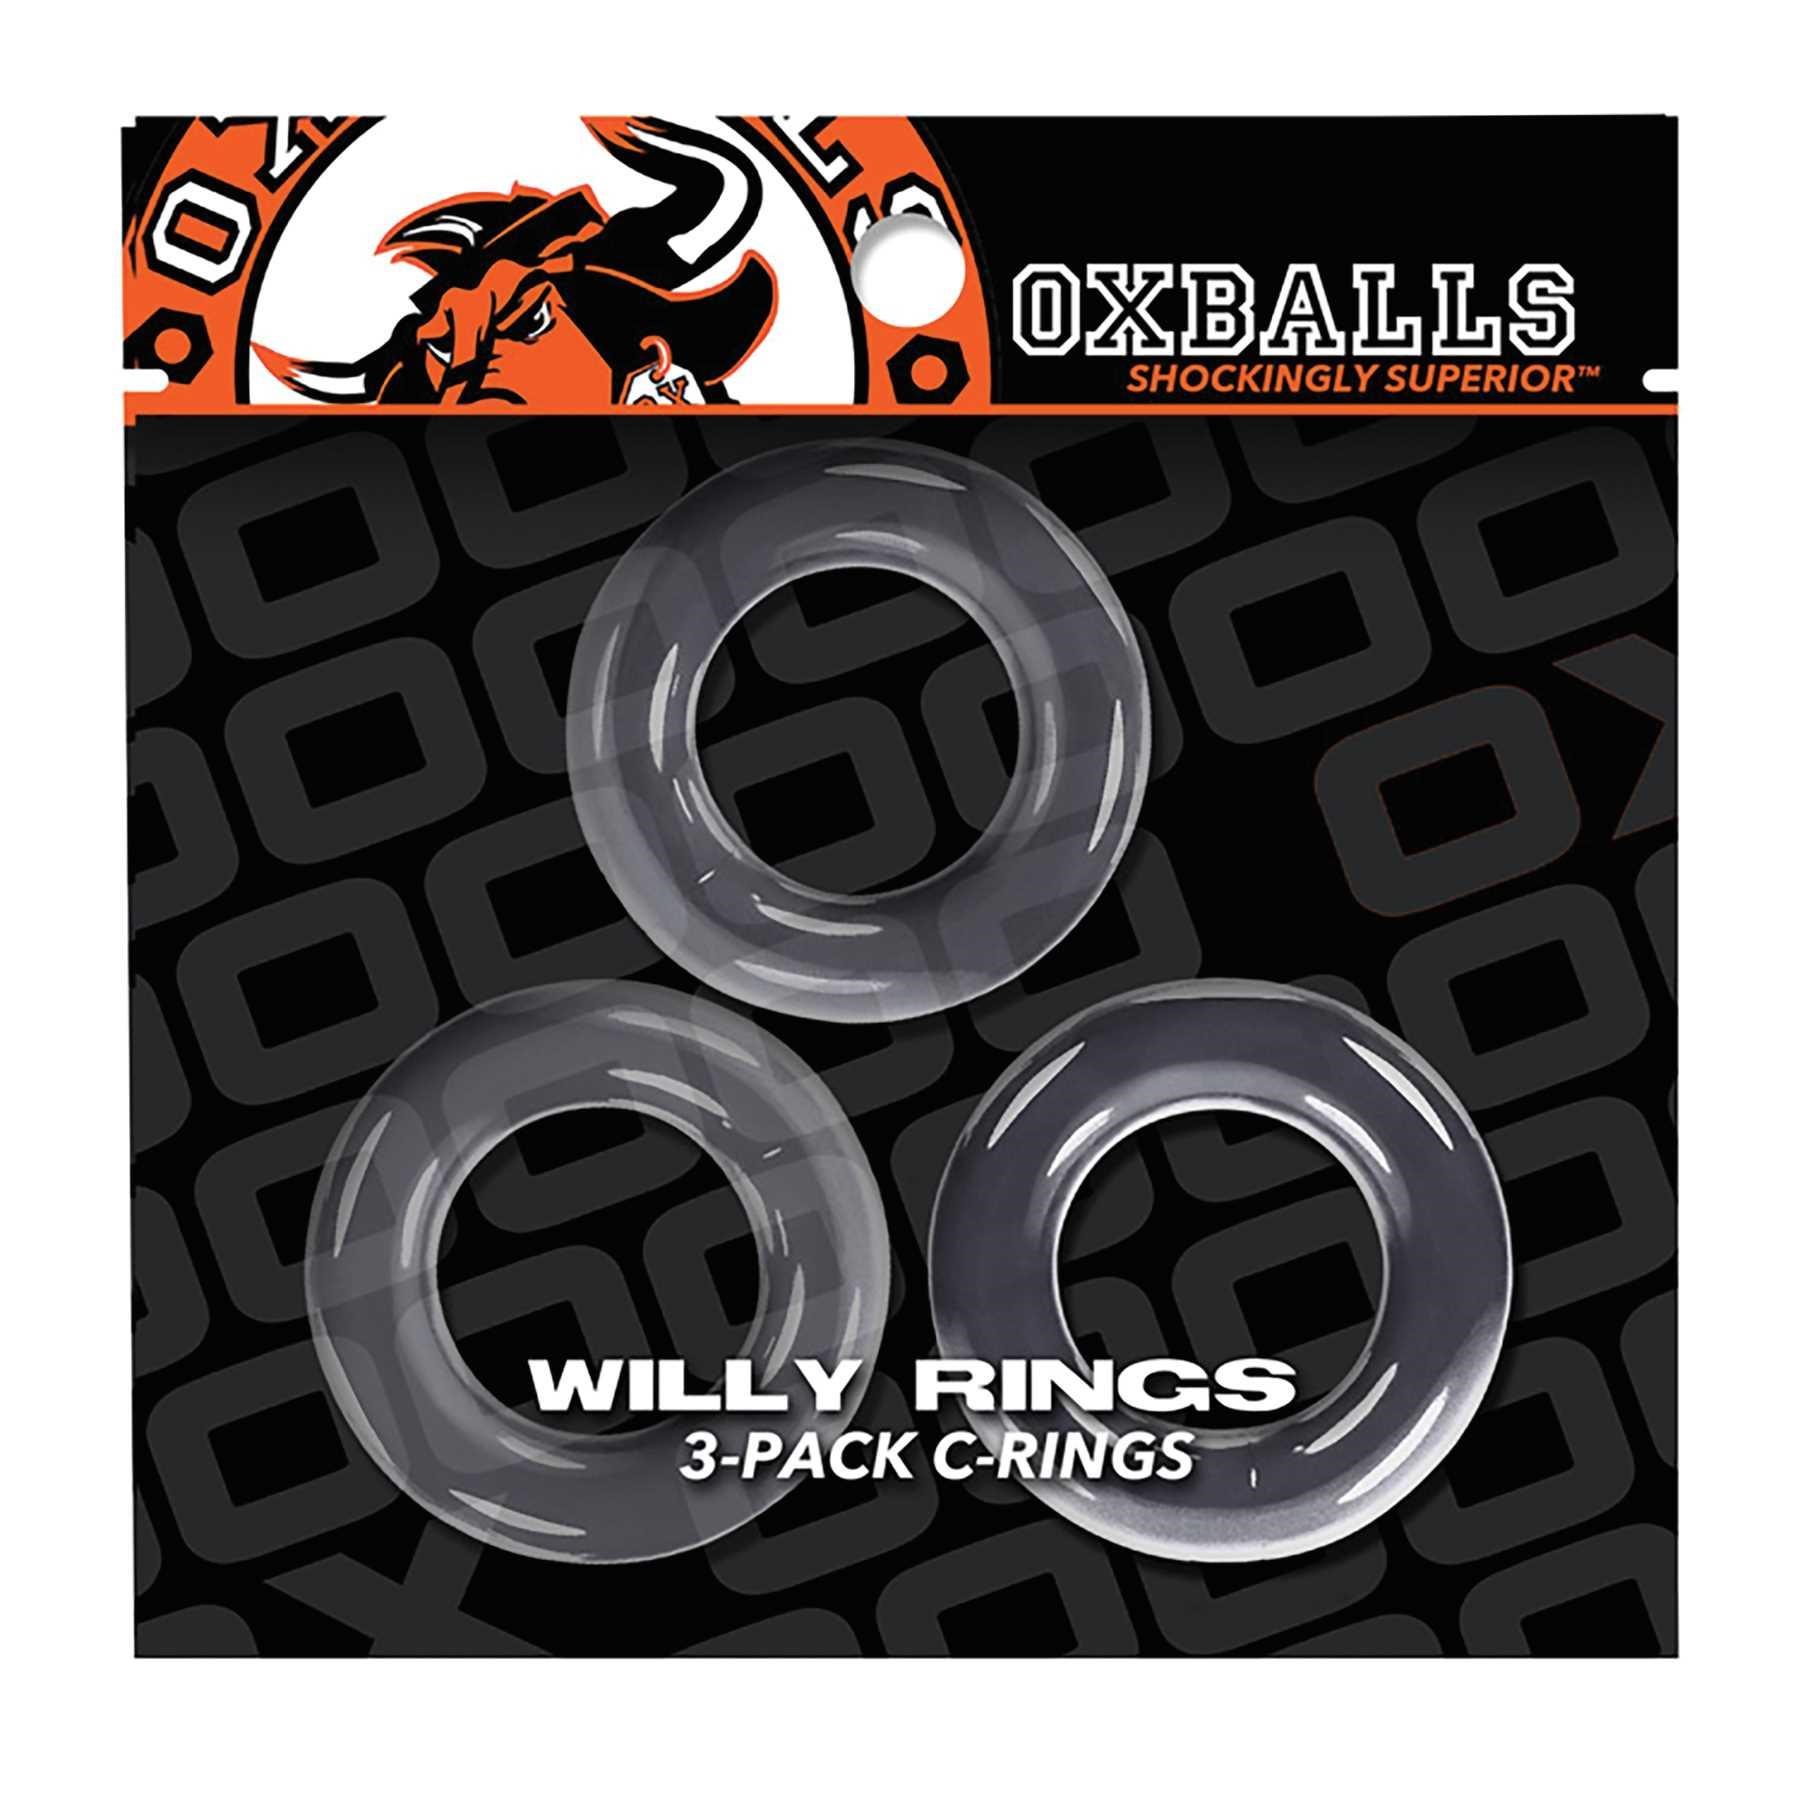 Willy Rings 3-Pack C-Rings packaging